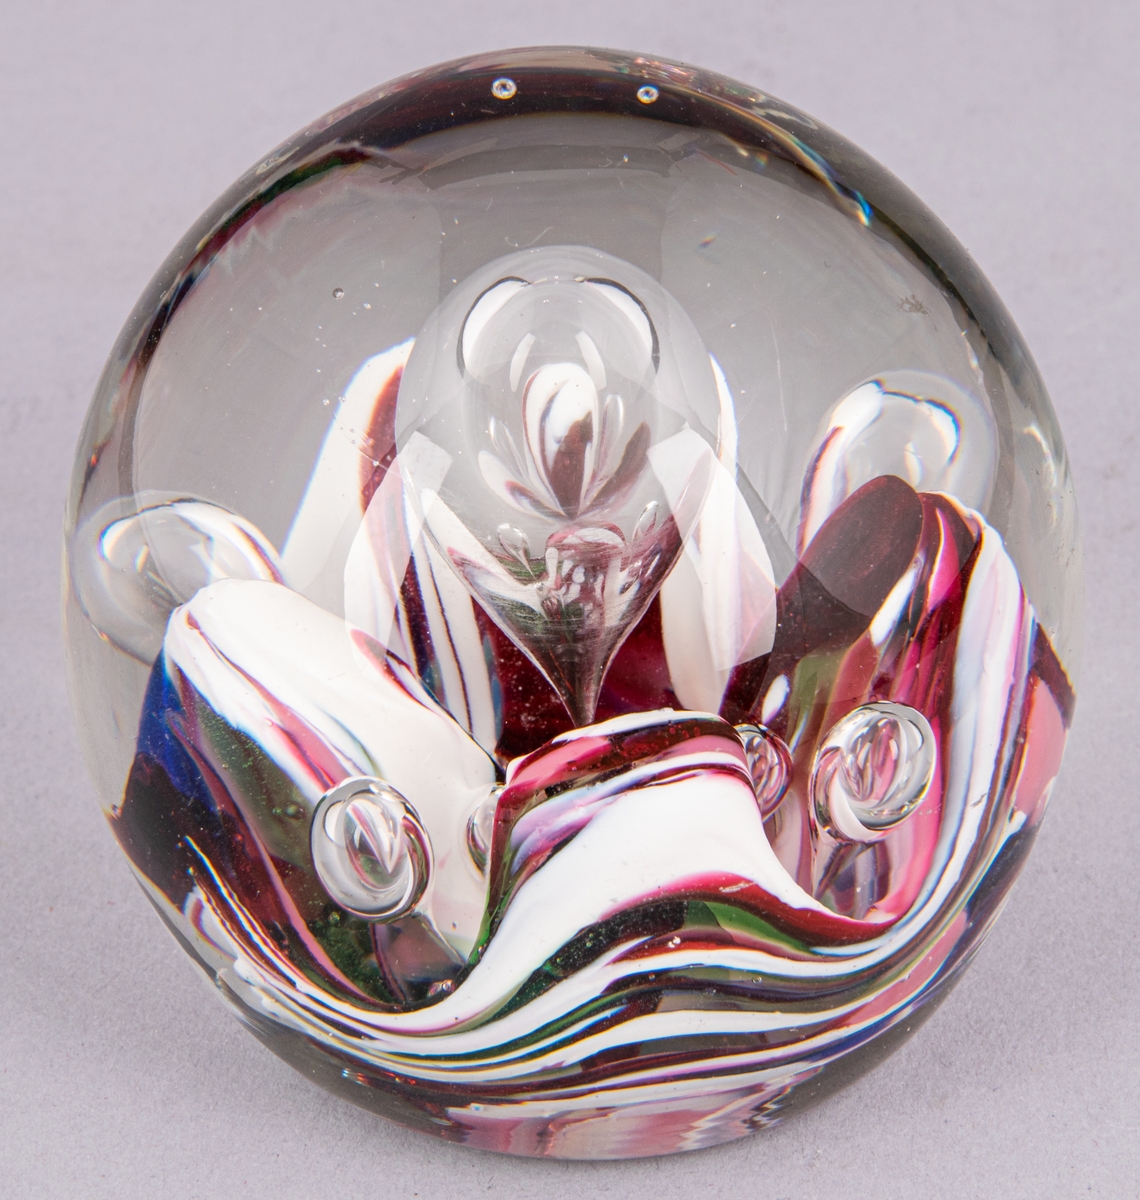 Blåst relativt solid glaskula, genomskinligt glas med vita och cerisea inläggningar.